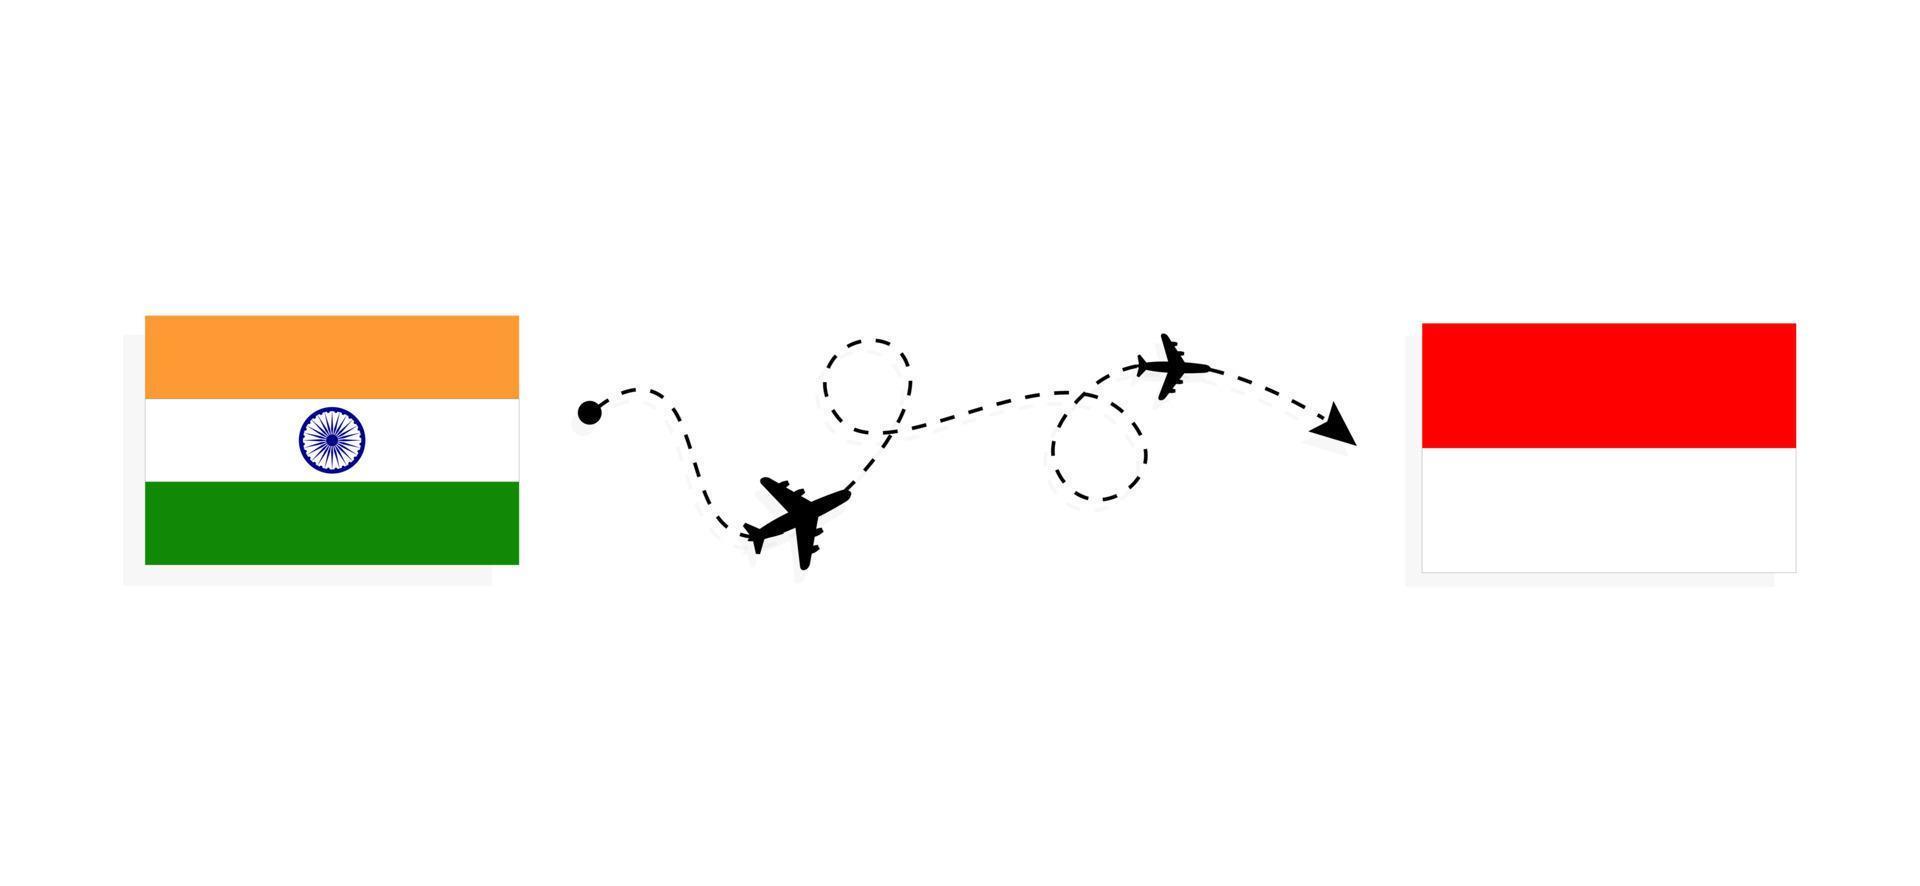 flyg och resor från Indien till Indonesien med passagerarflygplan vektor